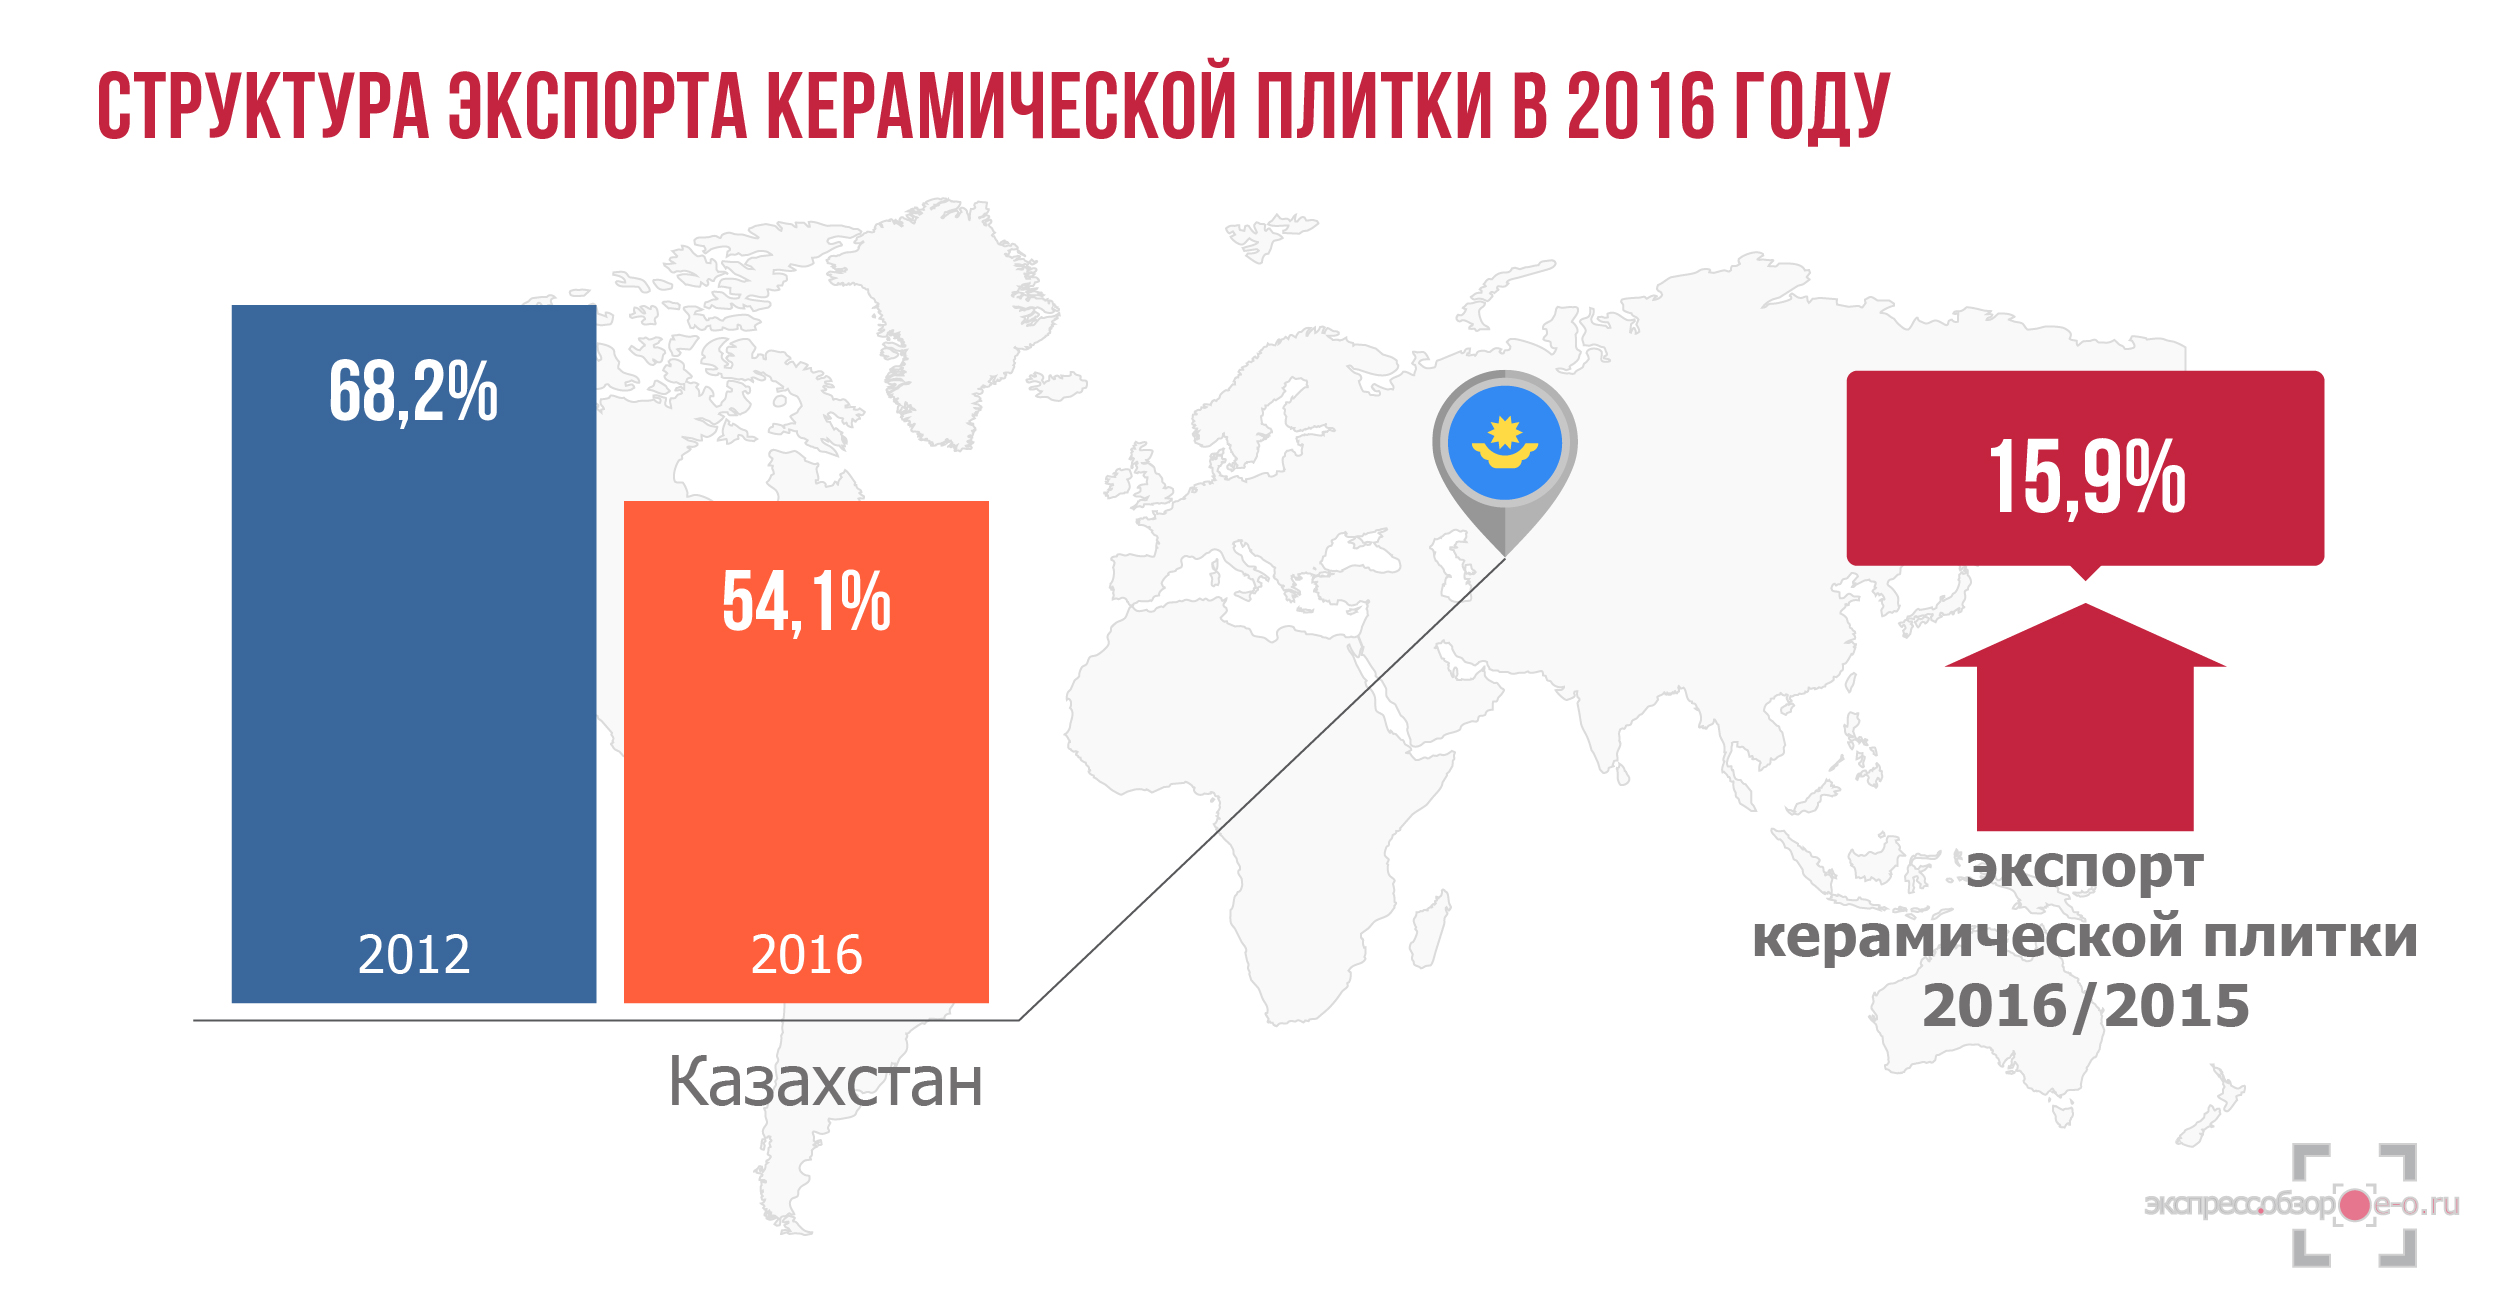 Экспорт керамической плитки в 2016 году